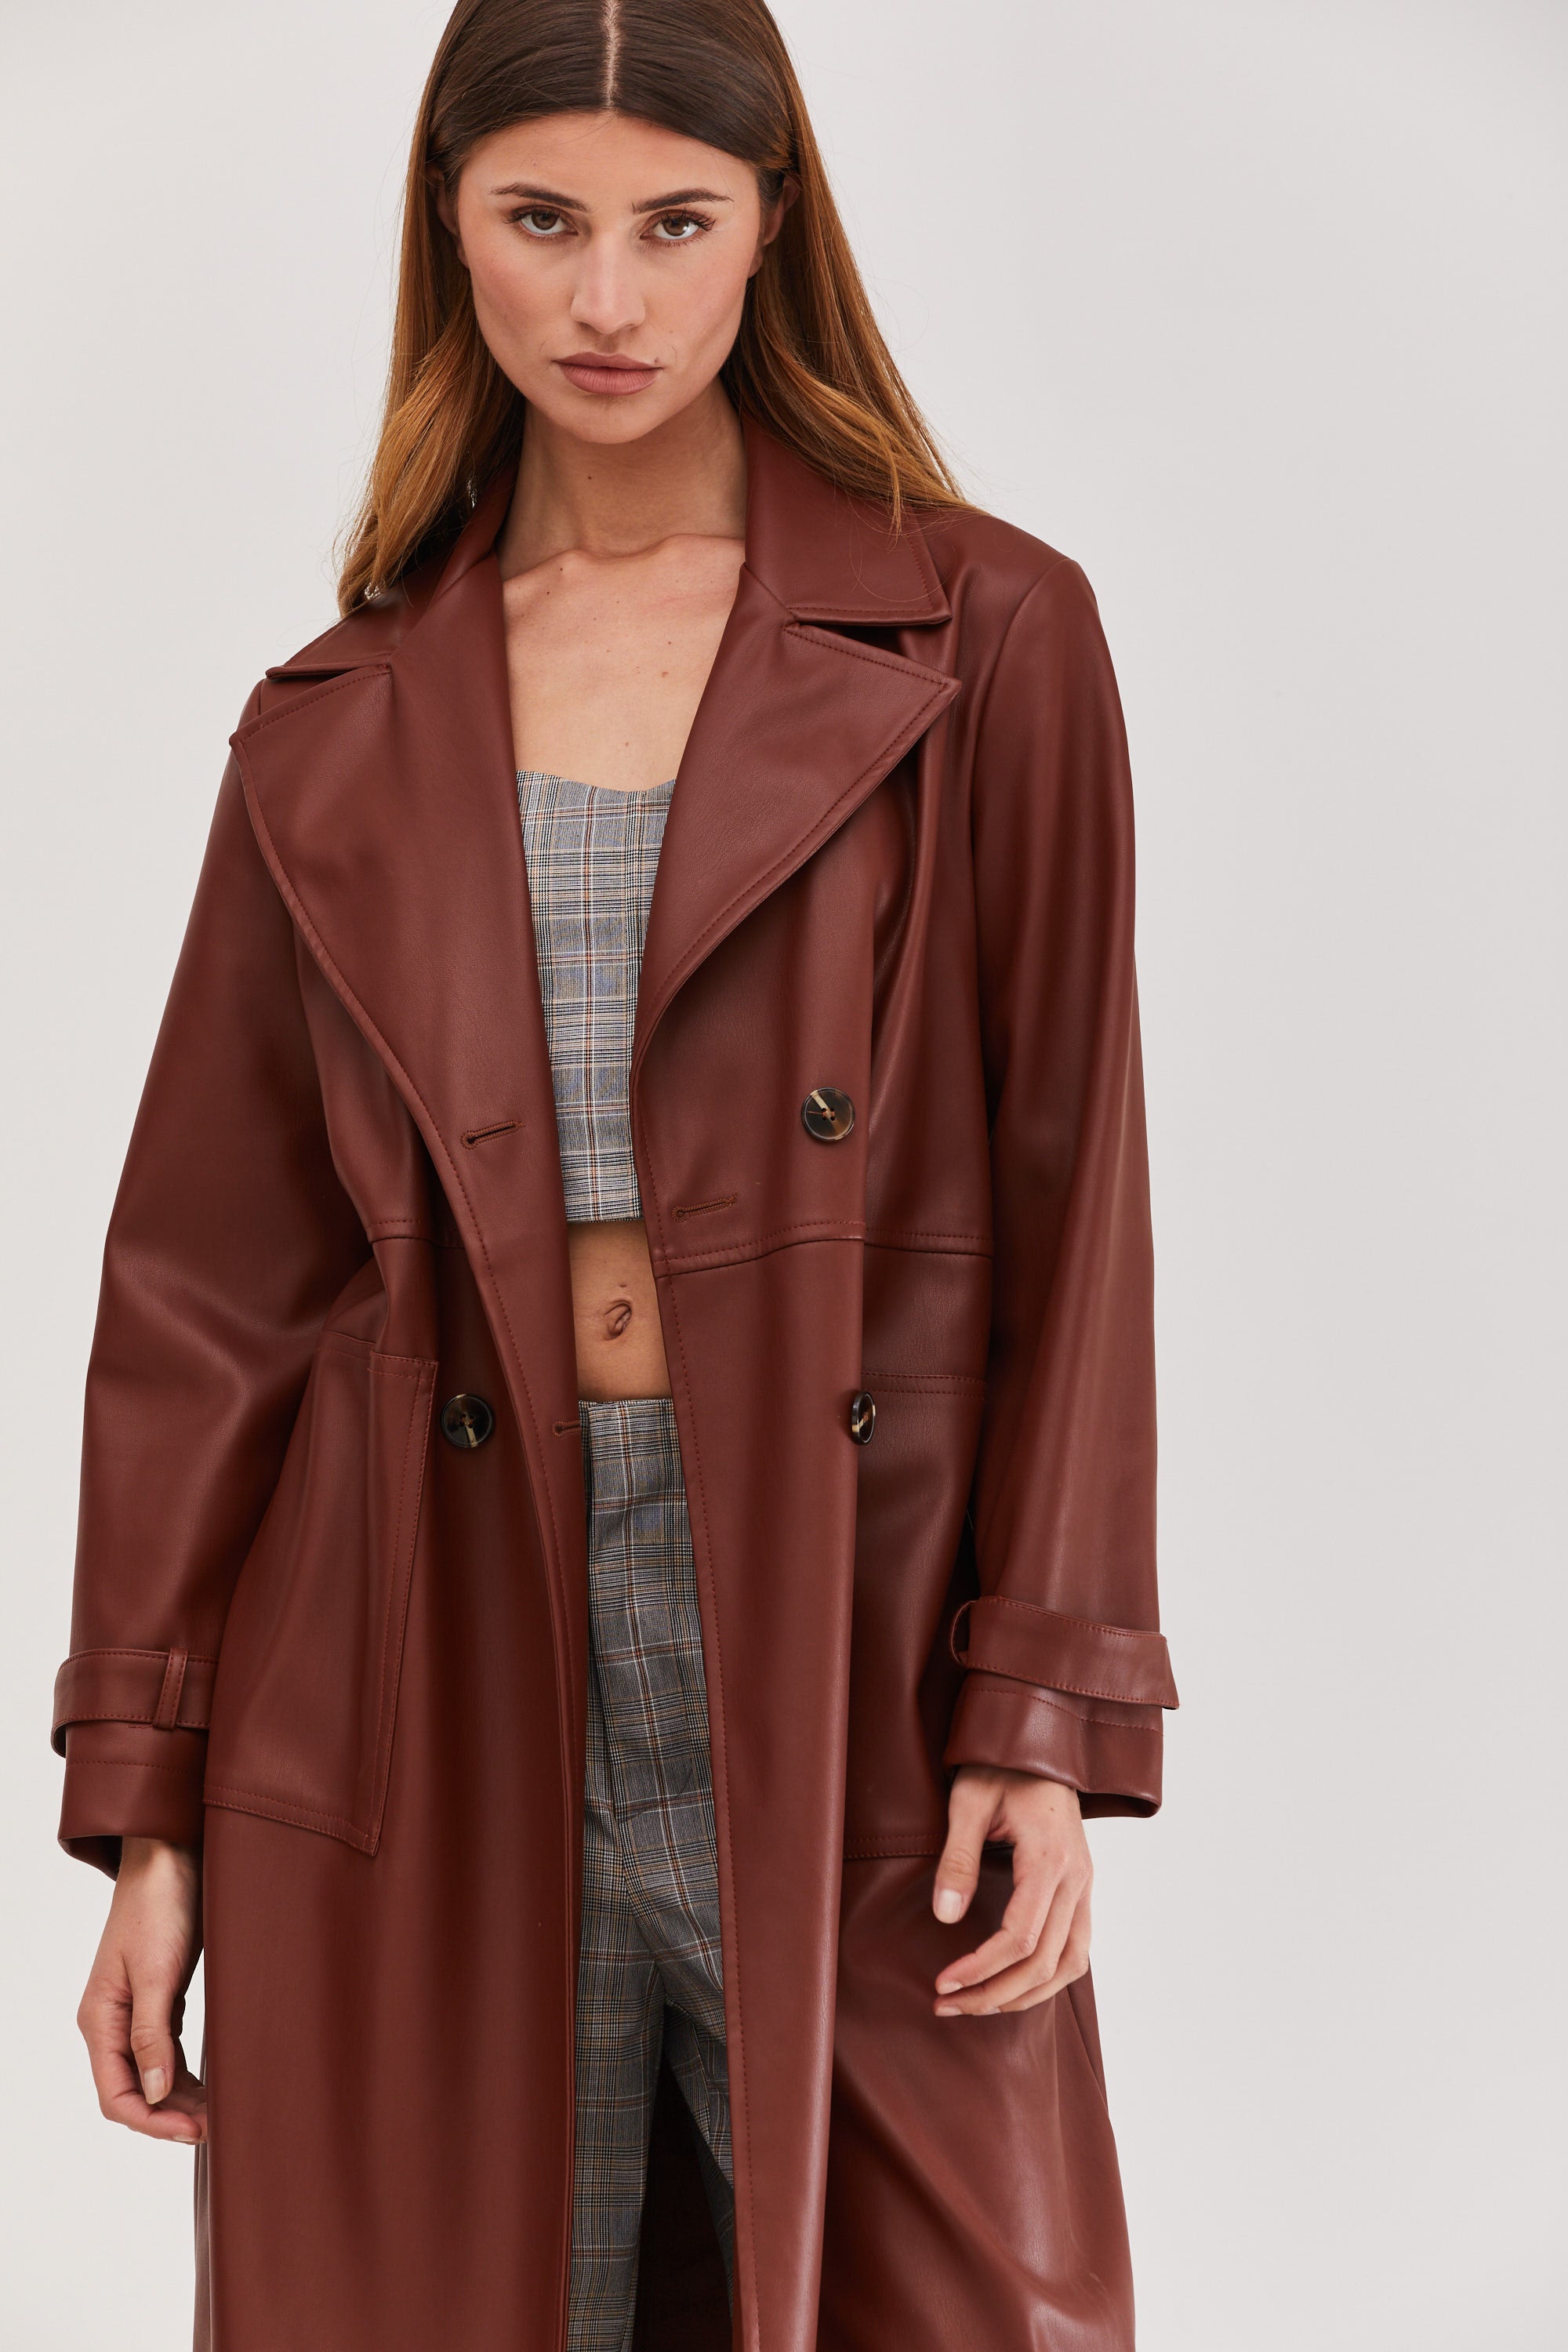 Mia Leather Trench Coat